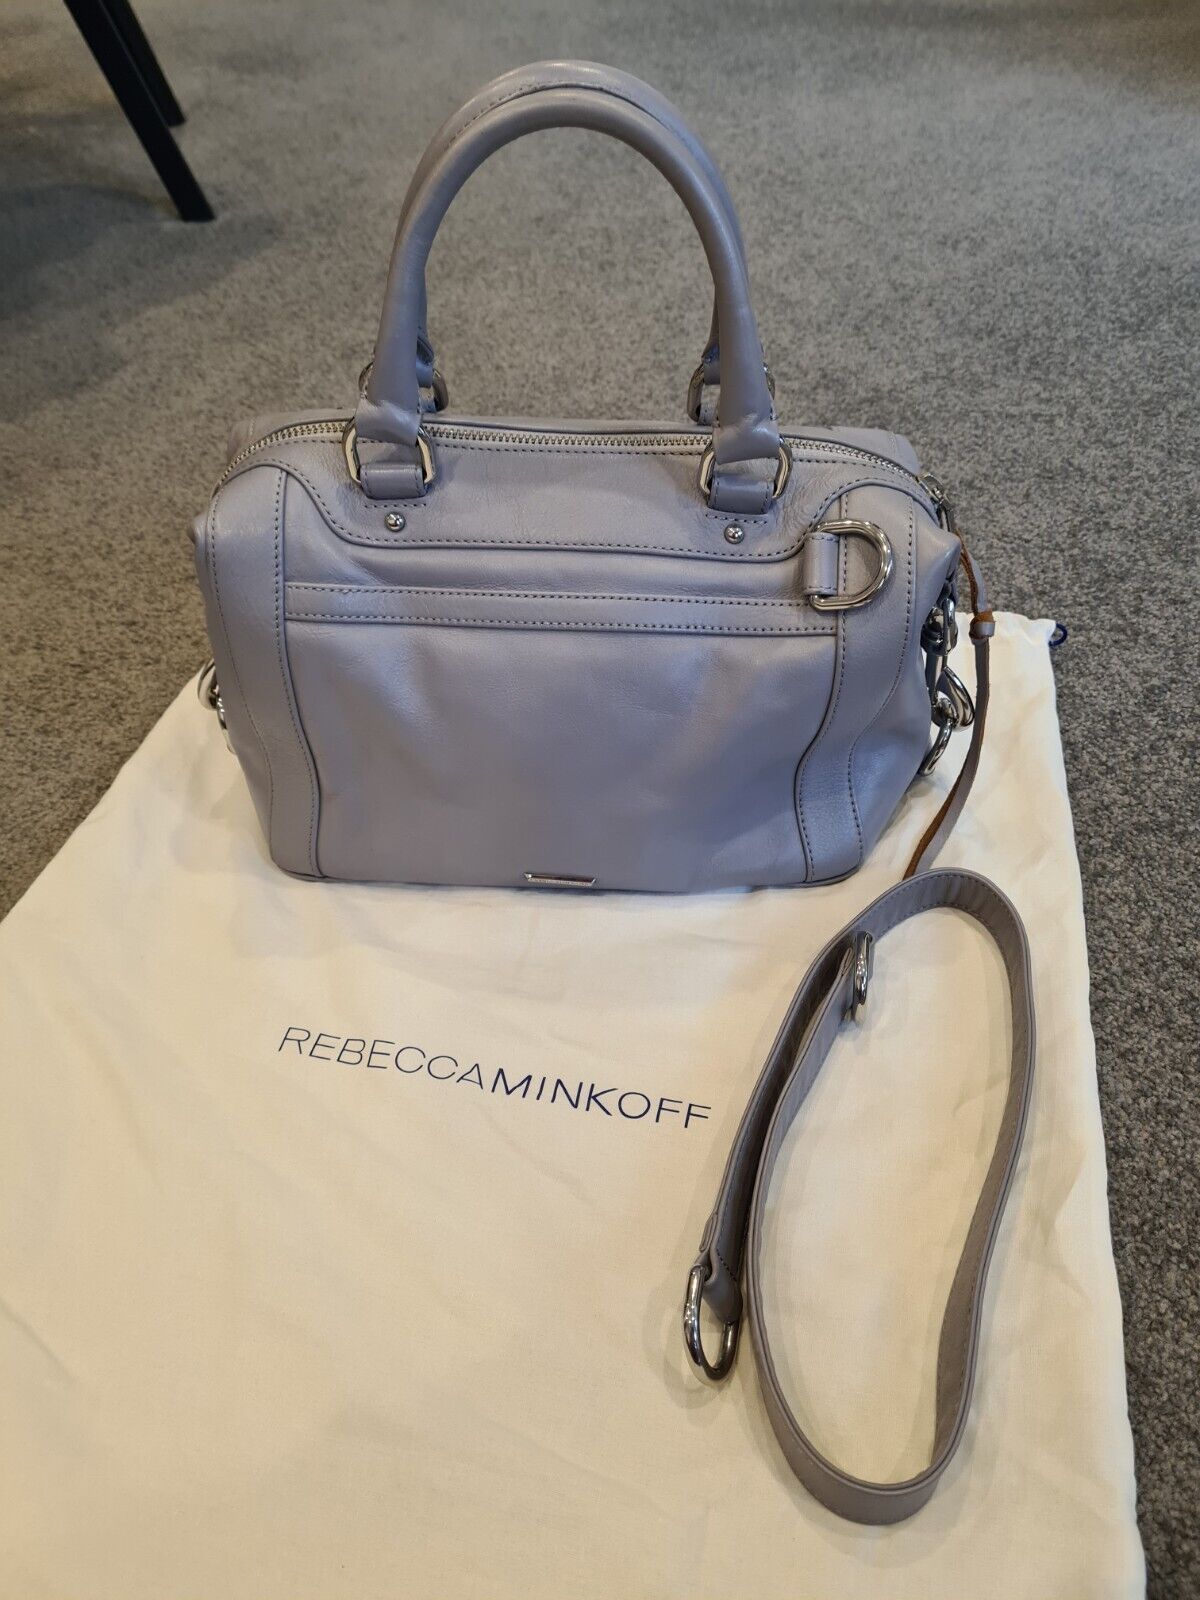 Rebecca minkoff Bag | eBay AU